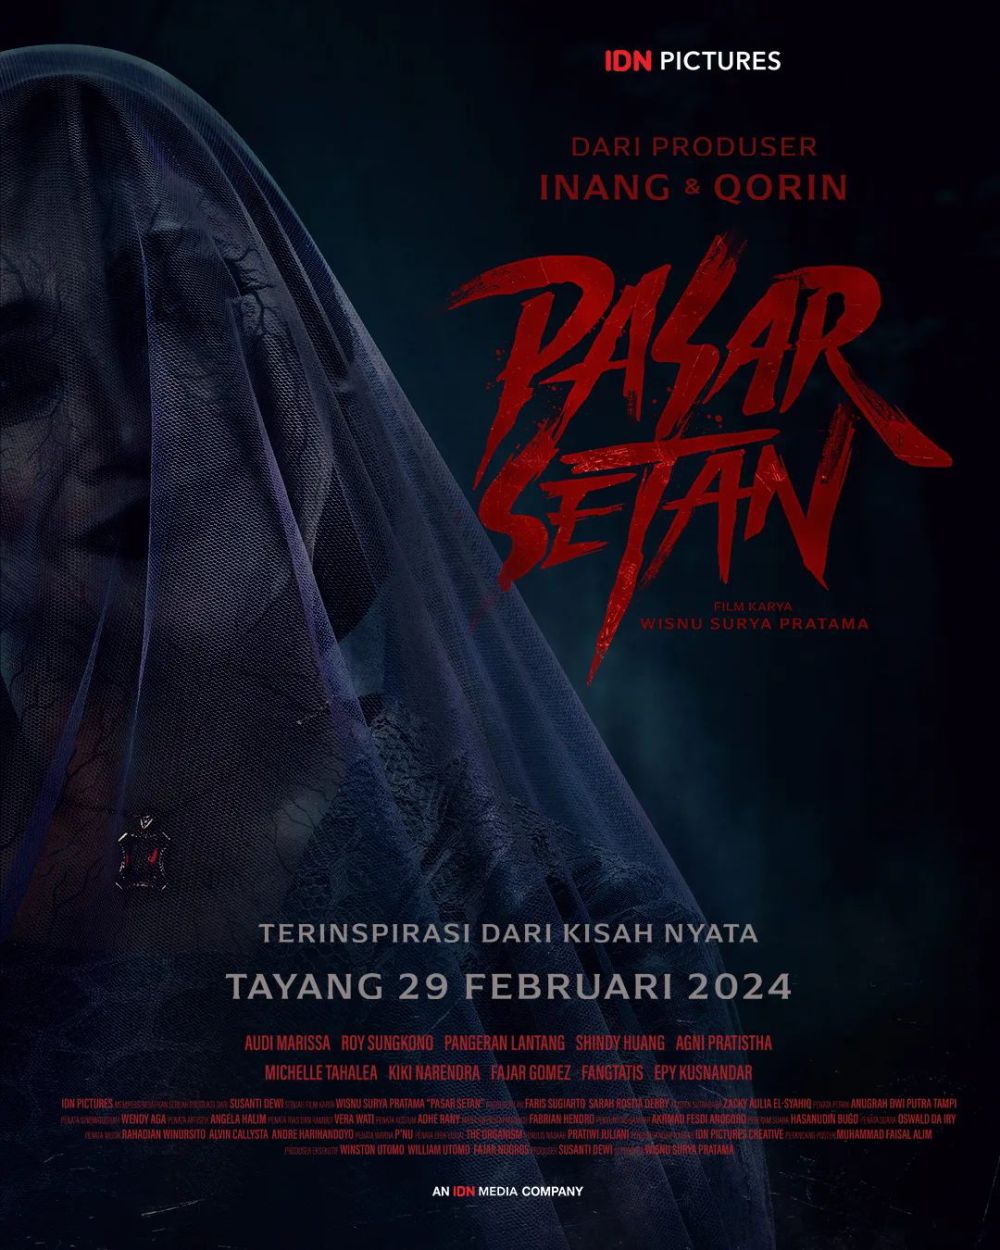 5 Film Indonesia Tentang Hutan Larangan, ada Pasar Setan